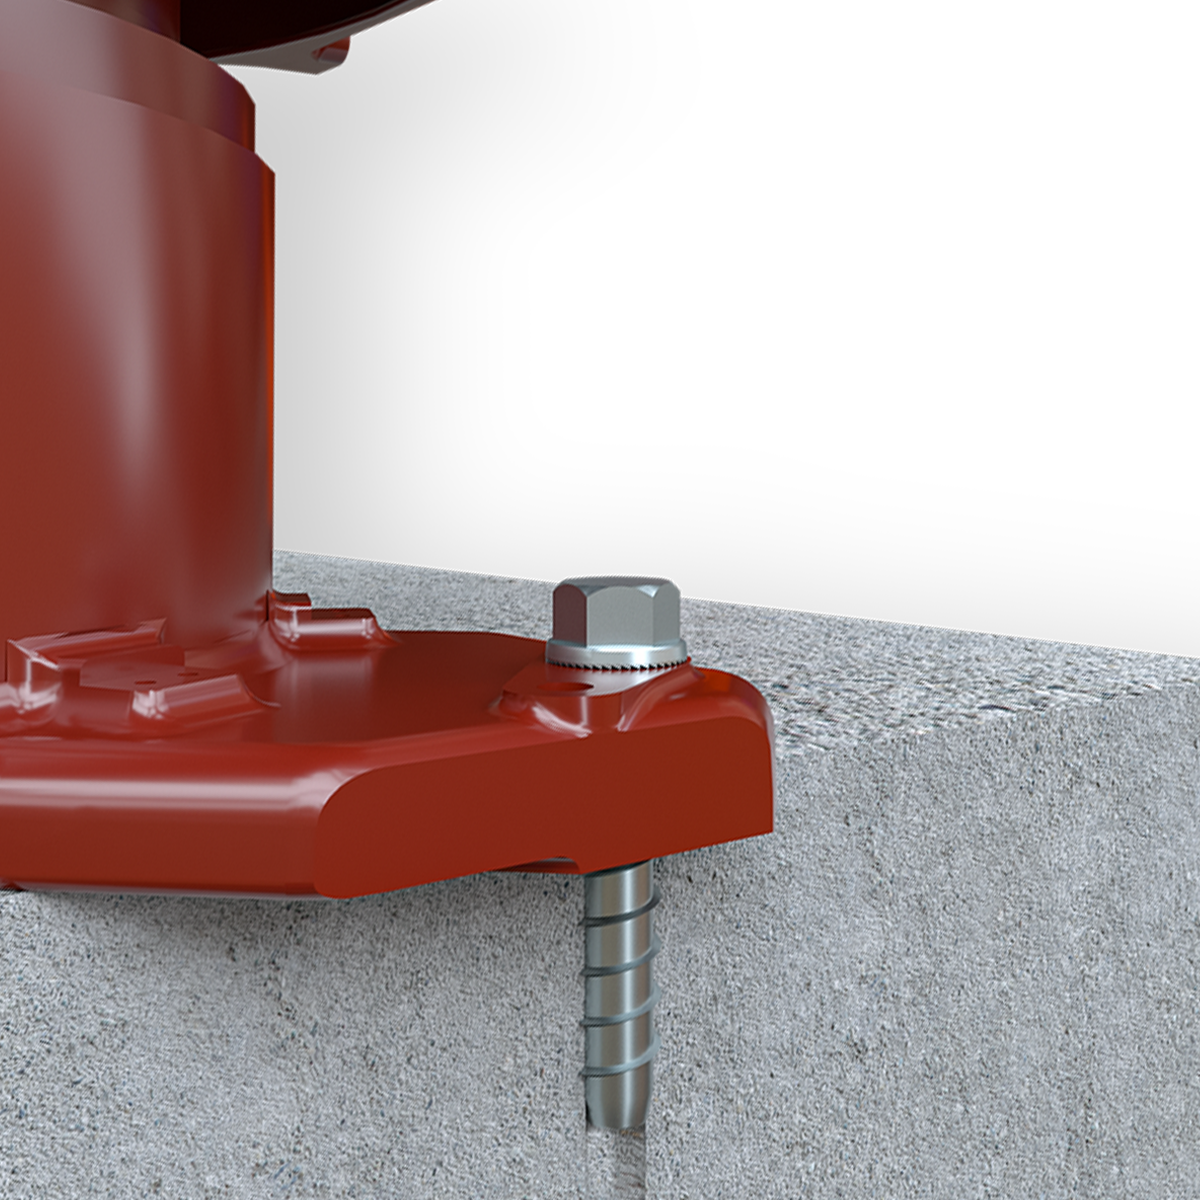 Wej-It 1/2" x 4" Concrete Screws Power-Skru ATEZG1240 20/BOX Galvanized 